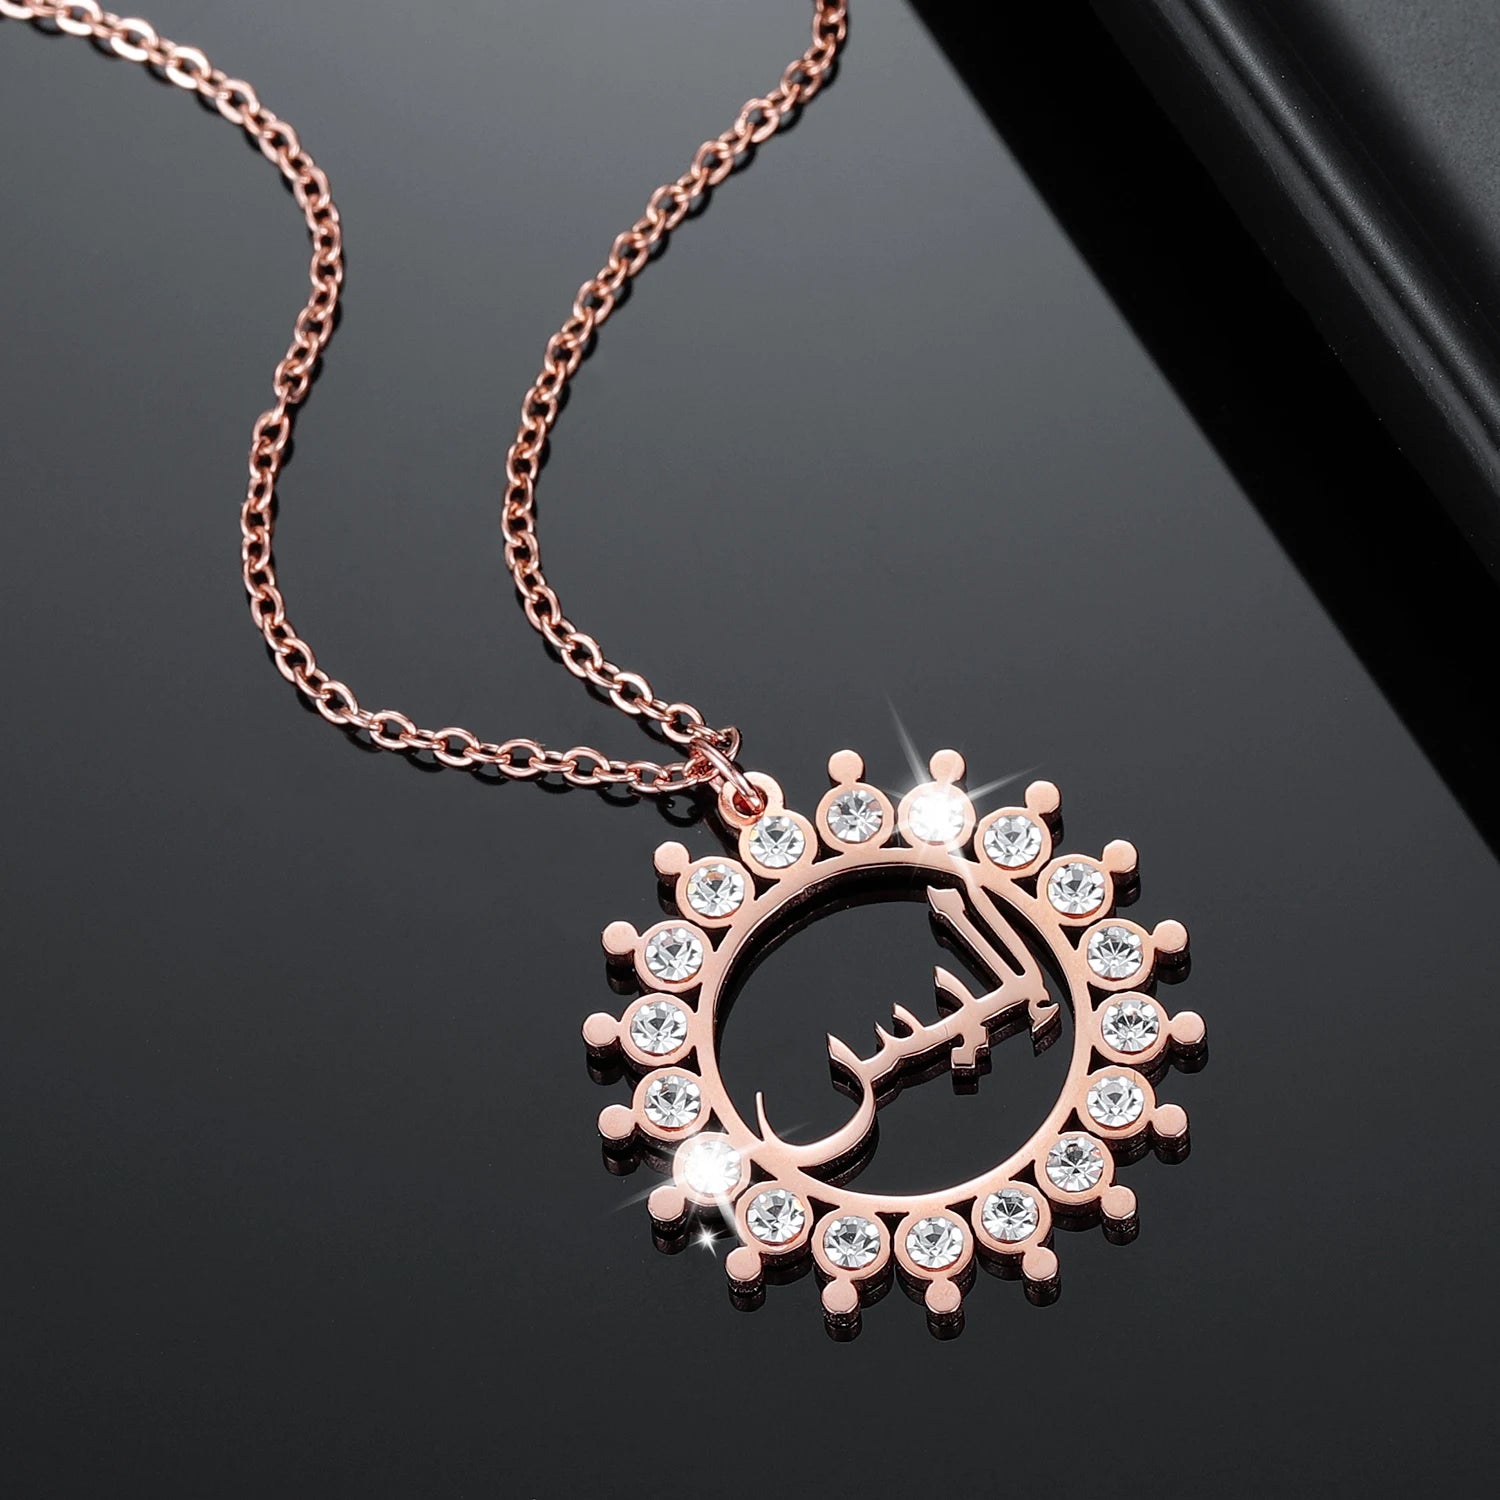 Glänzendes, maßgefertigtes Arabisches Namenscollier mit Kristallen – Persönlicher Anhänger für Frauen, einzigartiges Schmuckstück als Geschenk